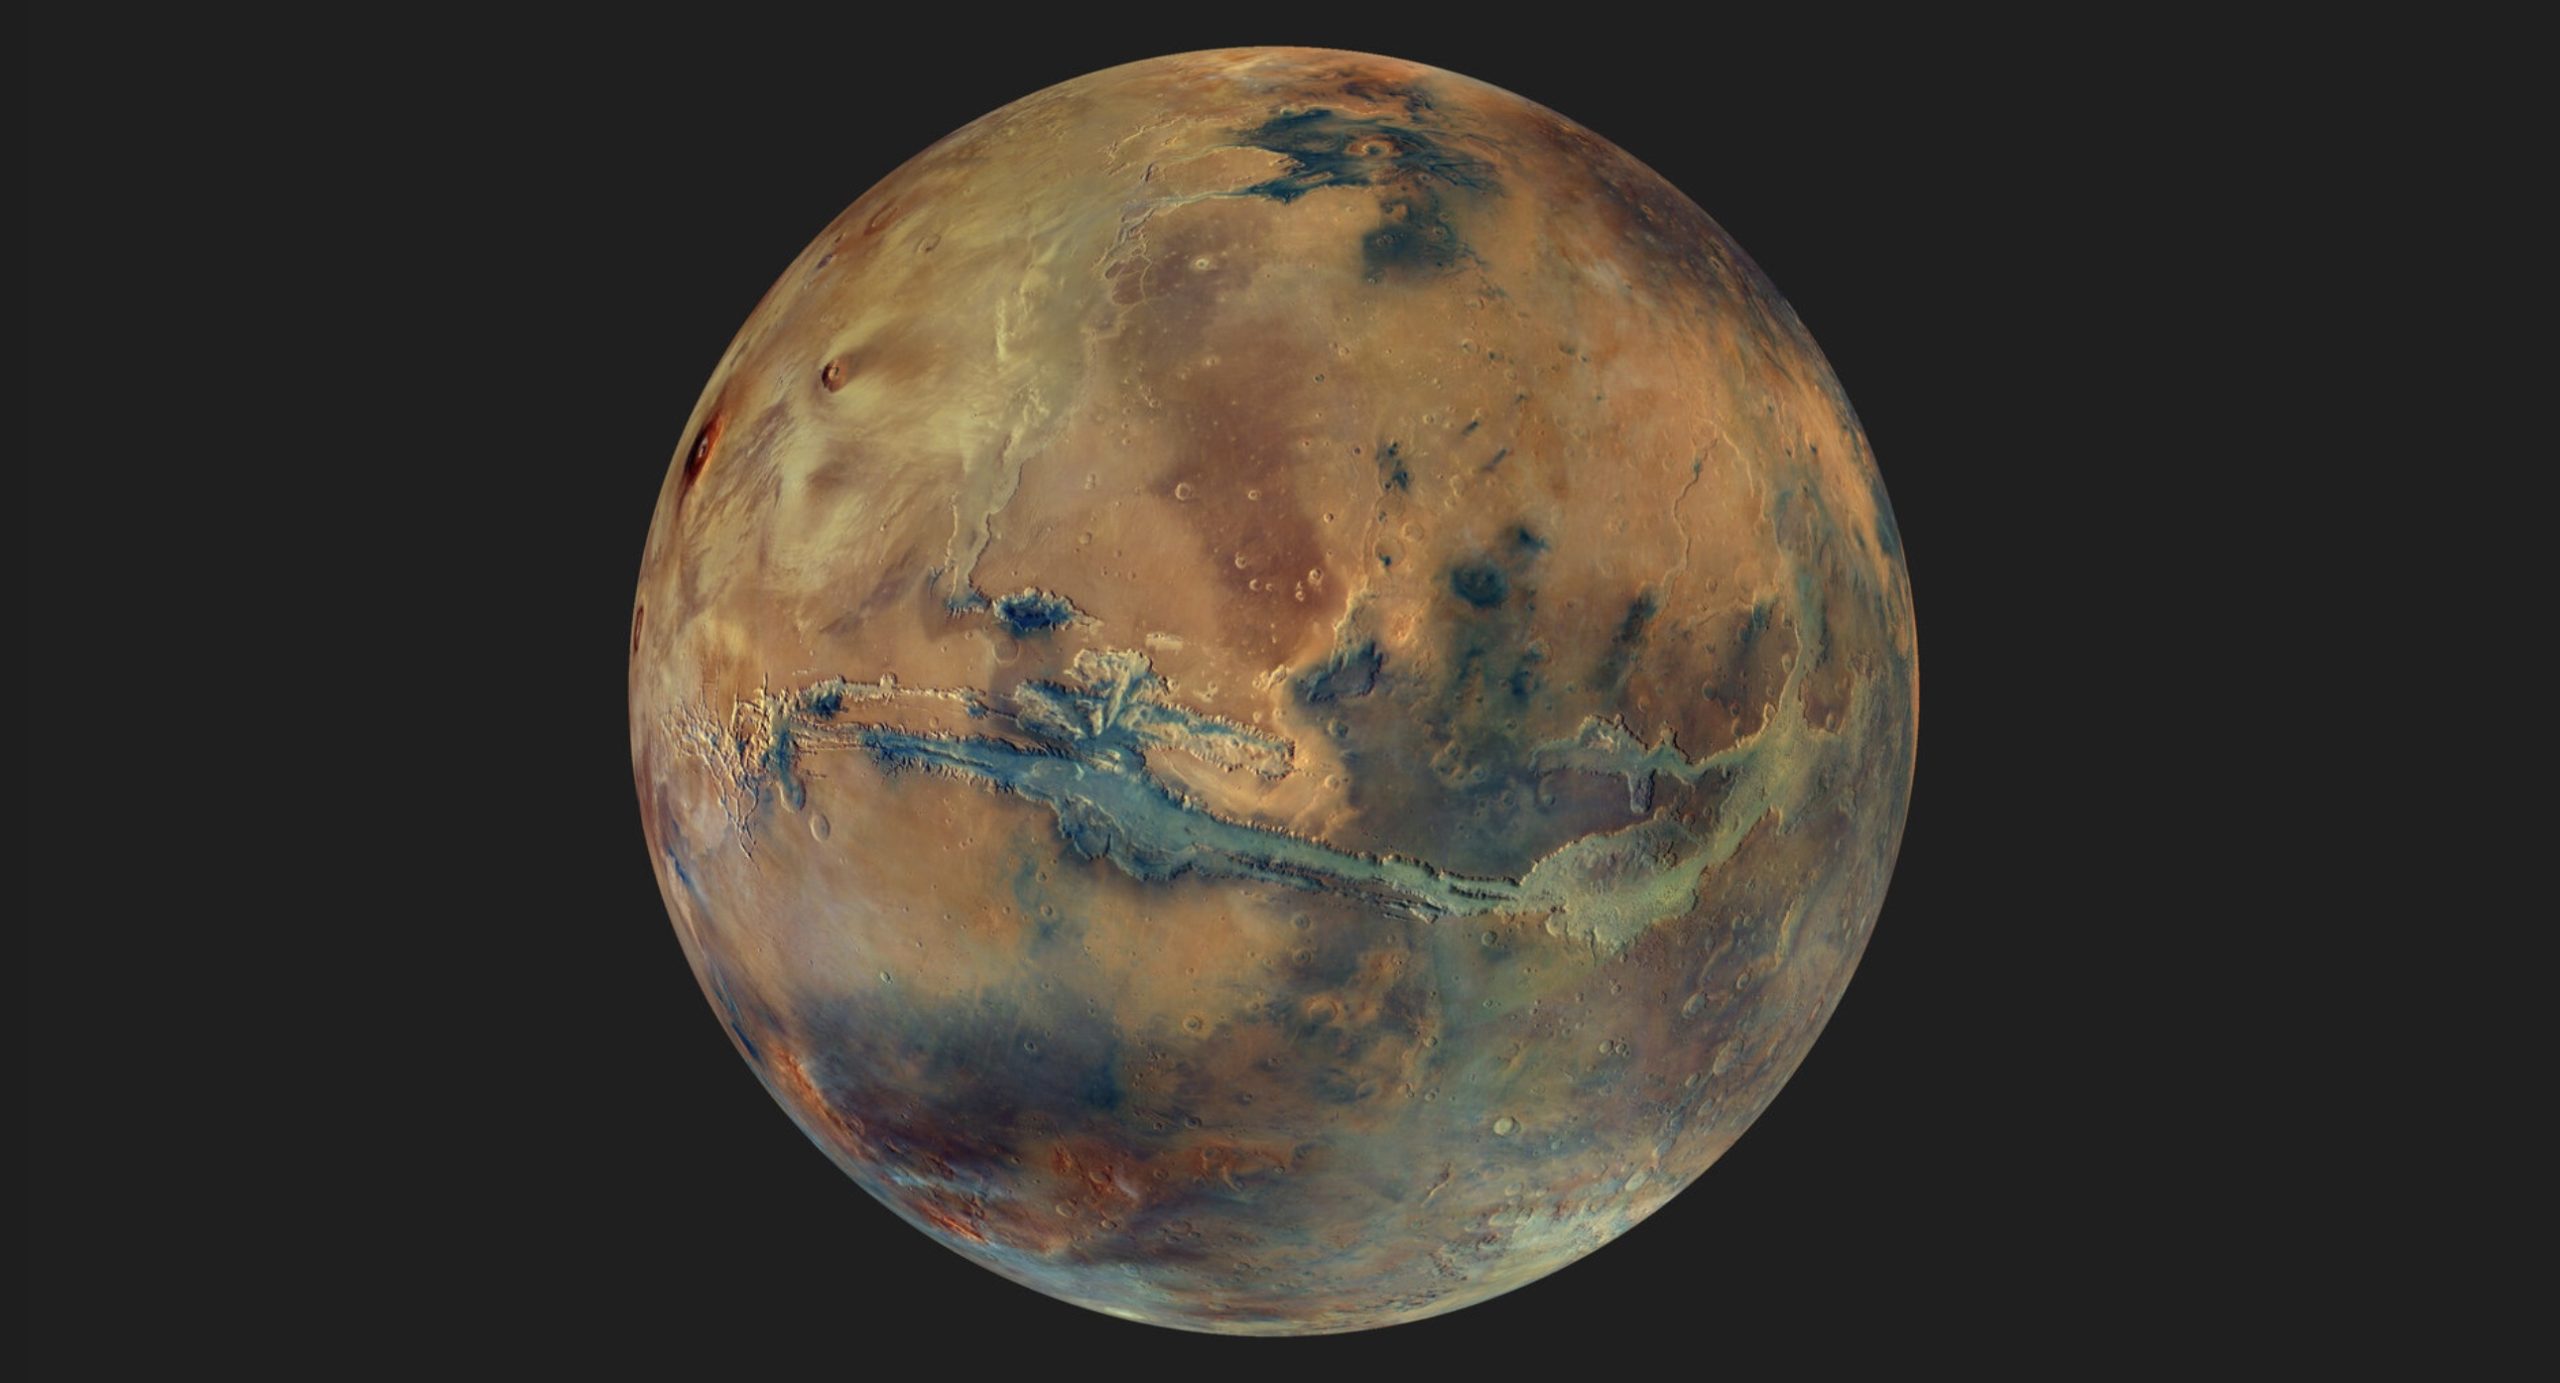 Mars Express ЕКА доставил новую захватывающую мозаику к 20-летию